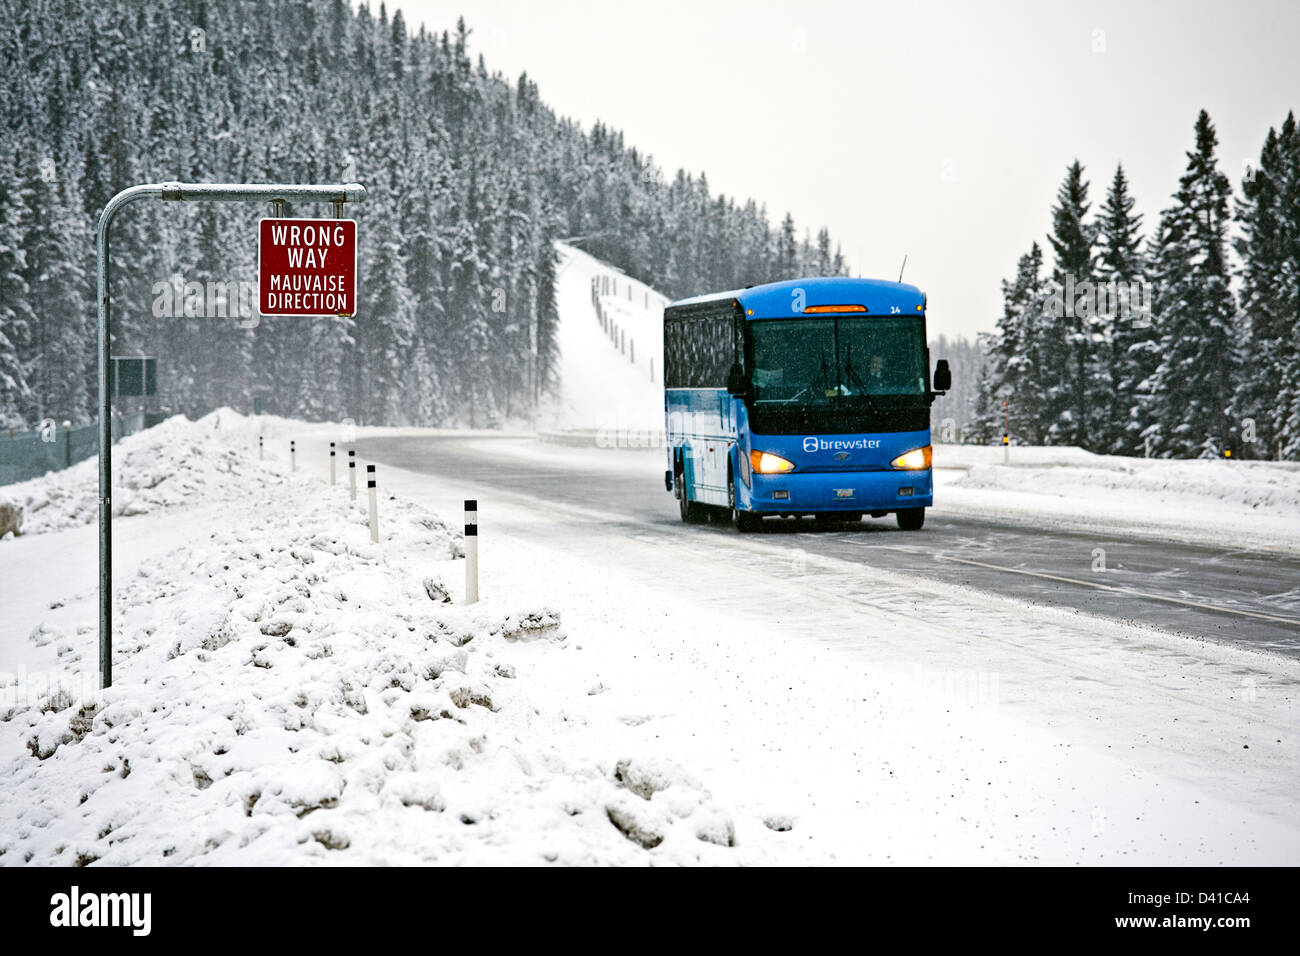 Mauvaise façon de signer et de bus de tournée sur la route transcanadienne dans des conditions hivernales, près de Lake Louise Banque D'Images